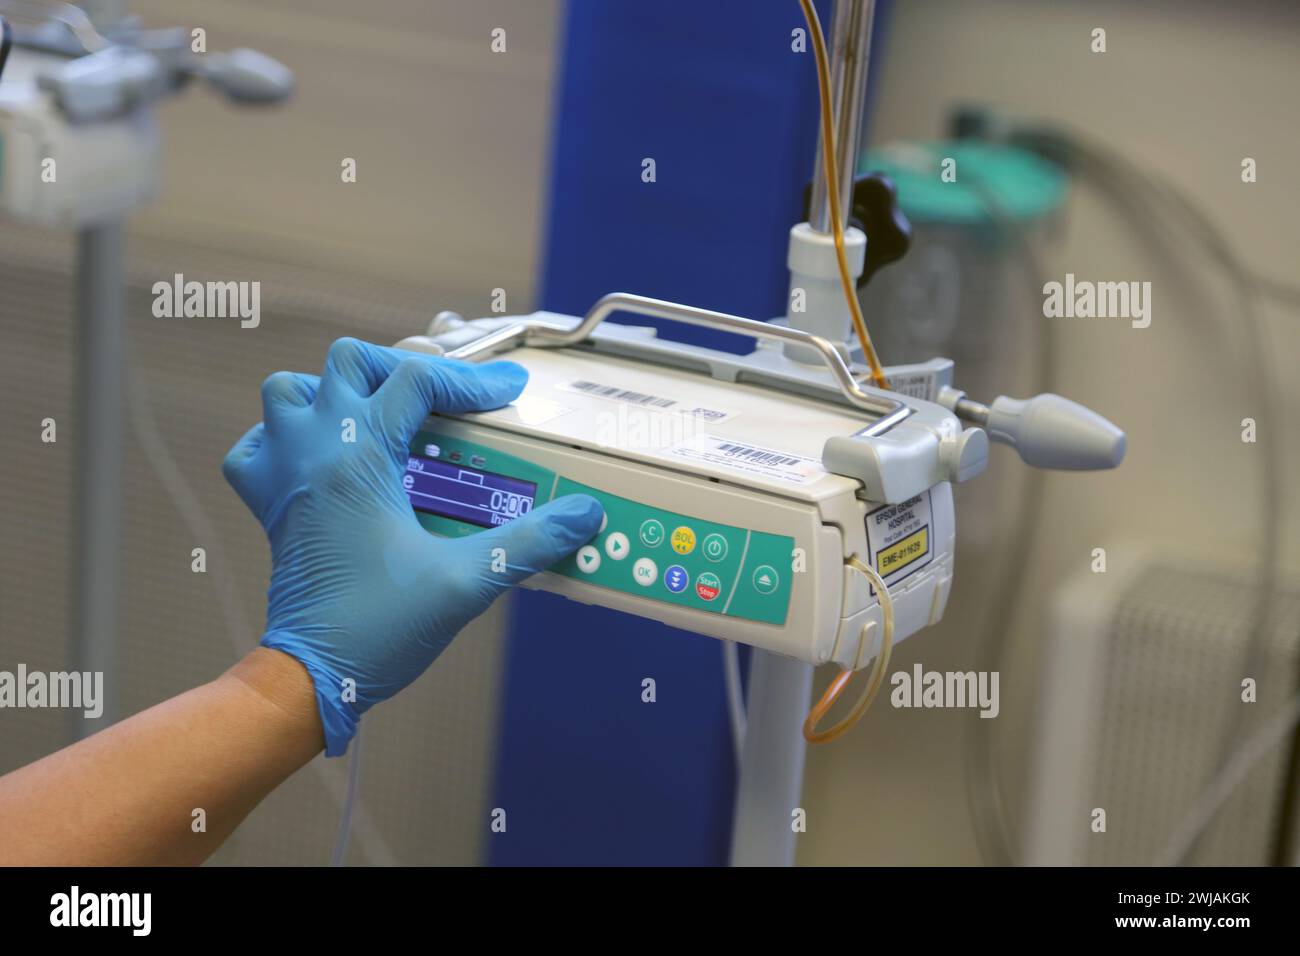 Infirmière préparant le système de pompe à perfusion volumétrique Infusomat Space prêt pour une perfusion de fer sur un patient à l'hôpital Surrey Angleterre Banque D'Images